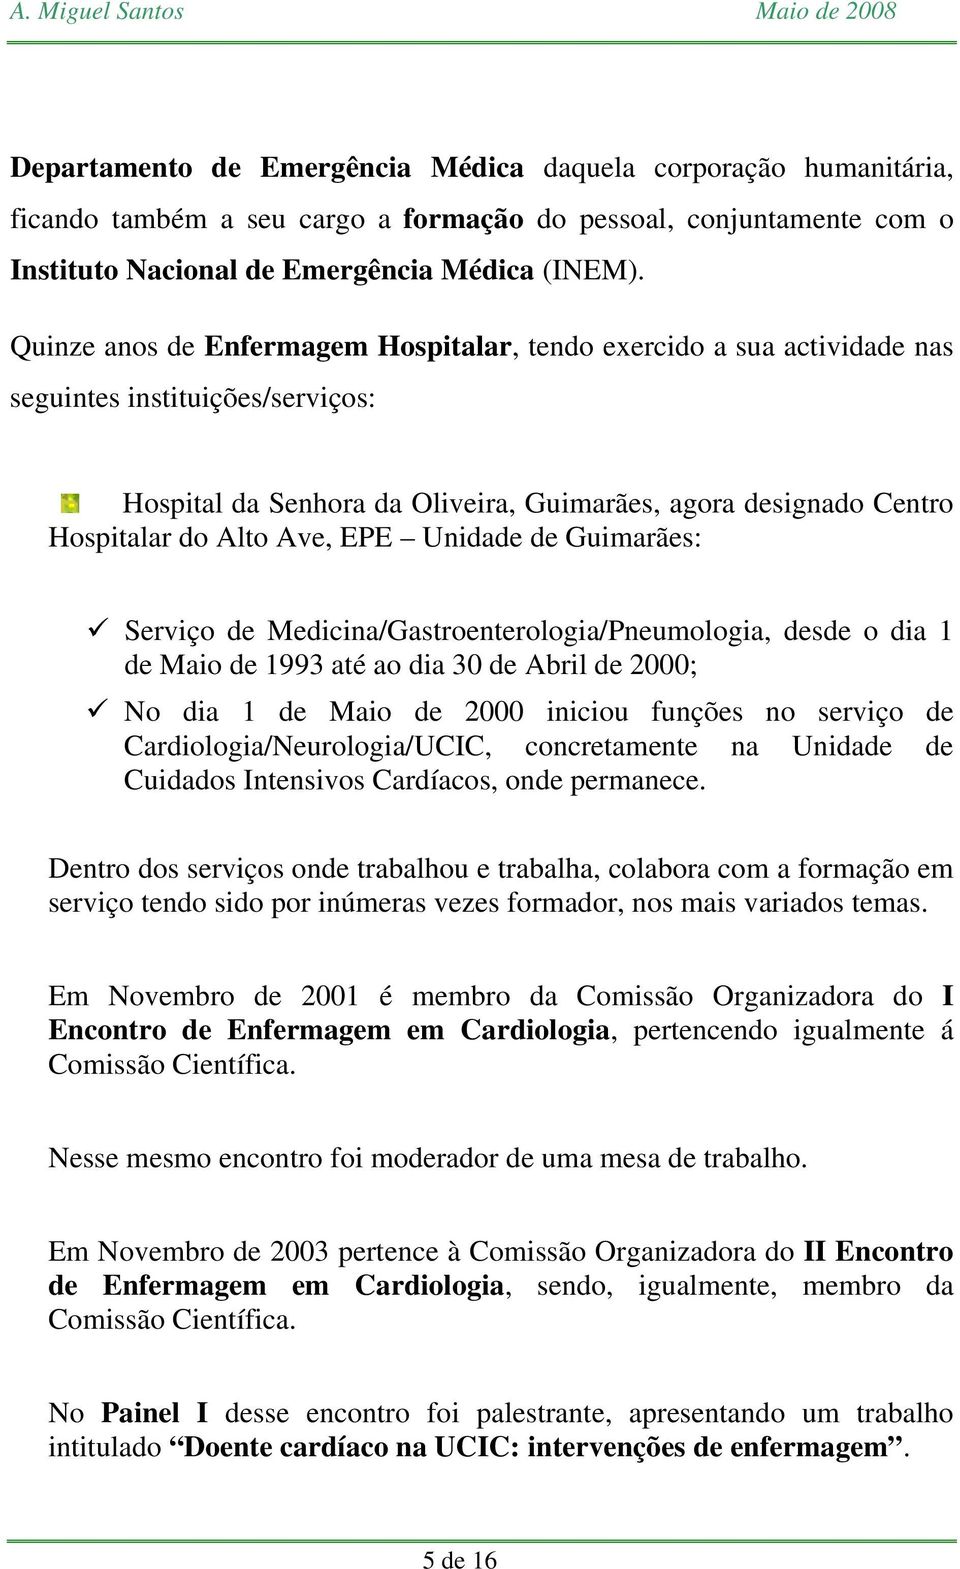 EPE Unidade de Guimarães: Serviço de Medicina/Gastroenterologia/Pneumologia, desde o dia 1 de Maio de 1993 até ao dia 30 de Abril de 2000; No dia 1 de Maio de 2000 iniciou funções no serviço de